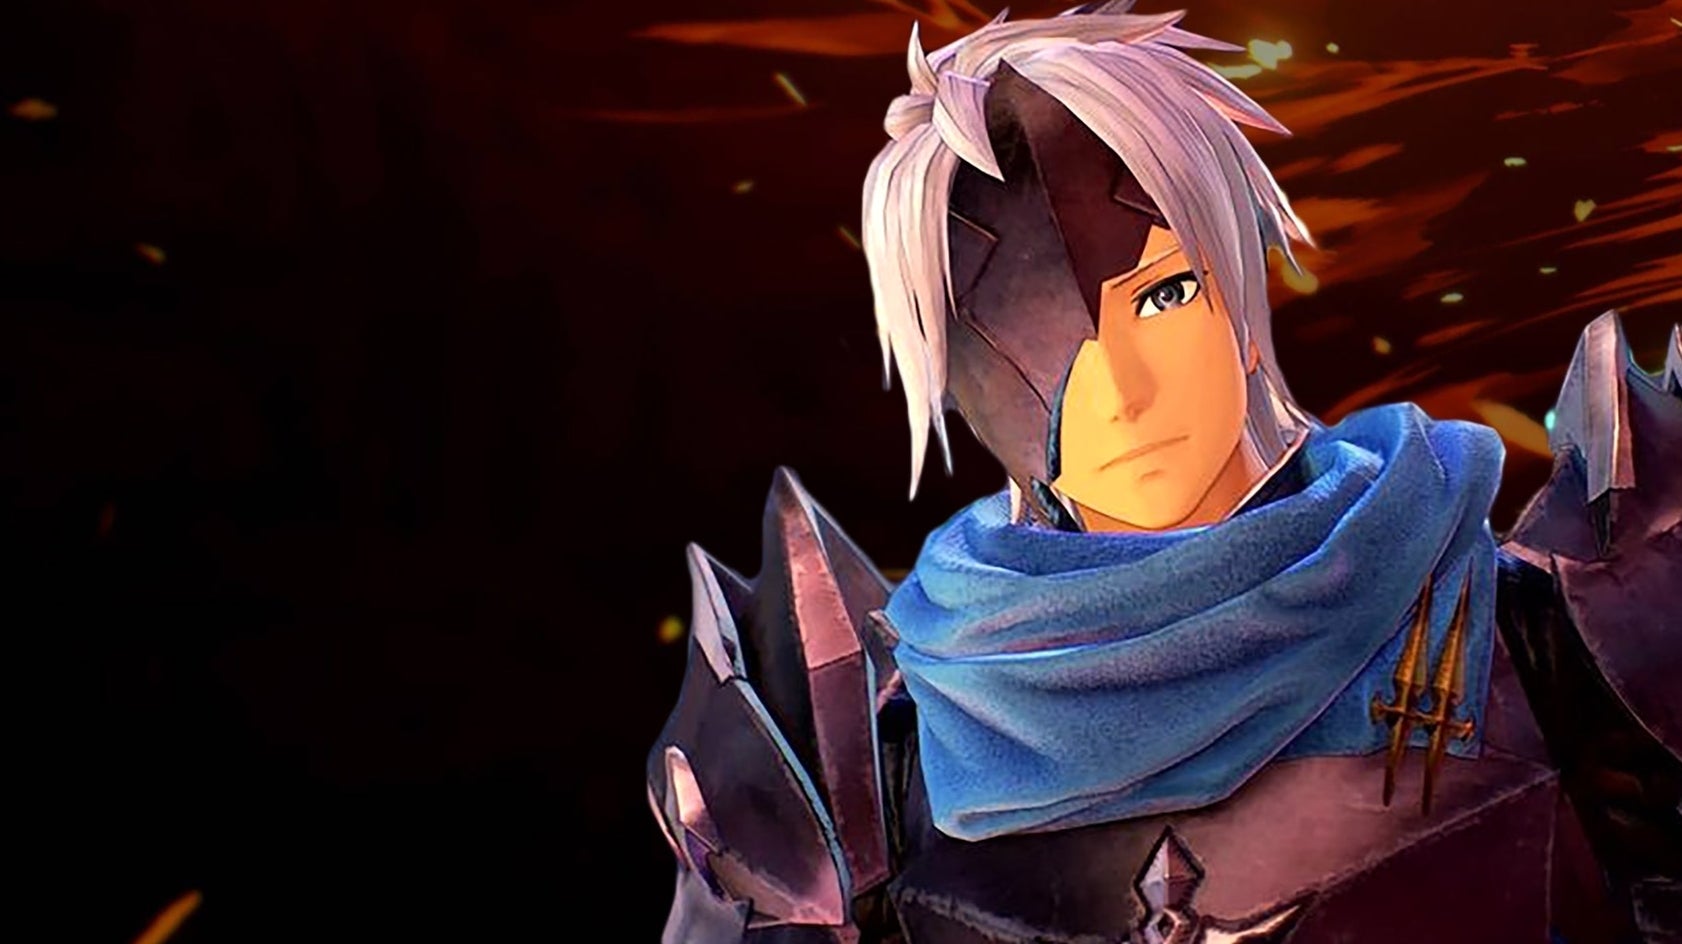 Bilder zu Tales of Arise: Neuer DLC mit Charakteren aus Sword Art Online angekündigt